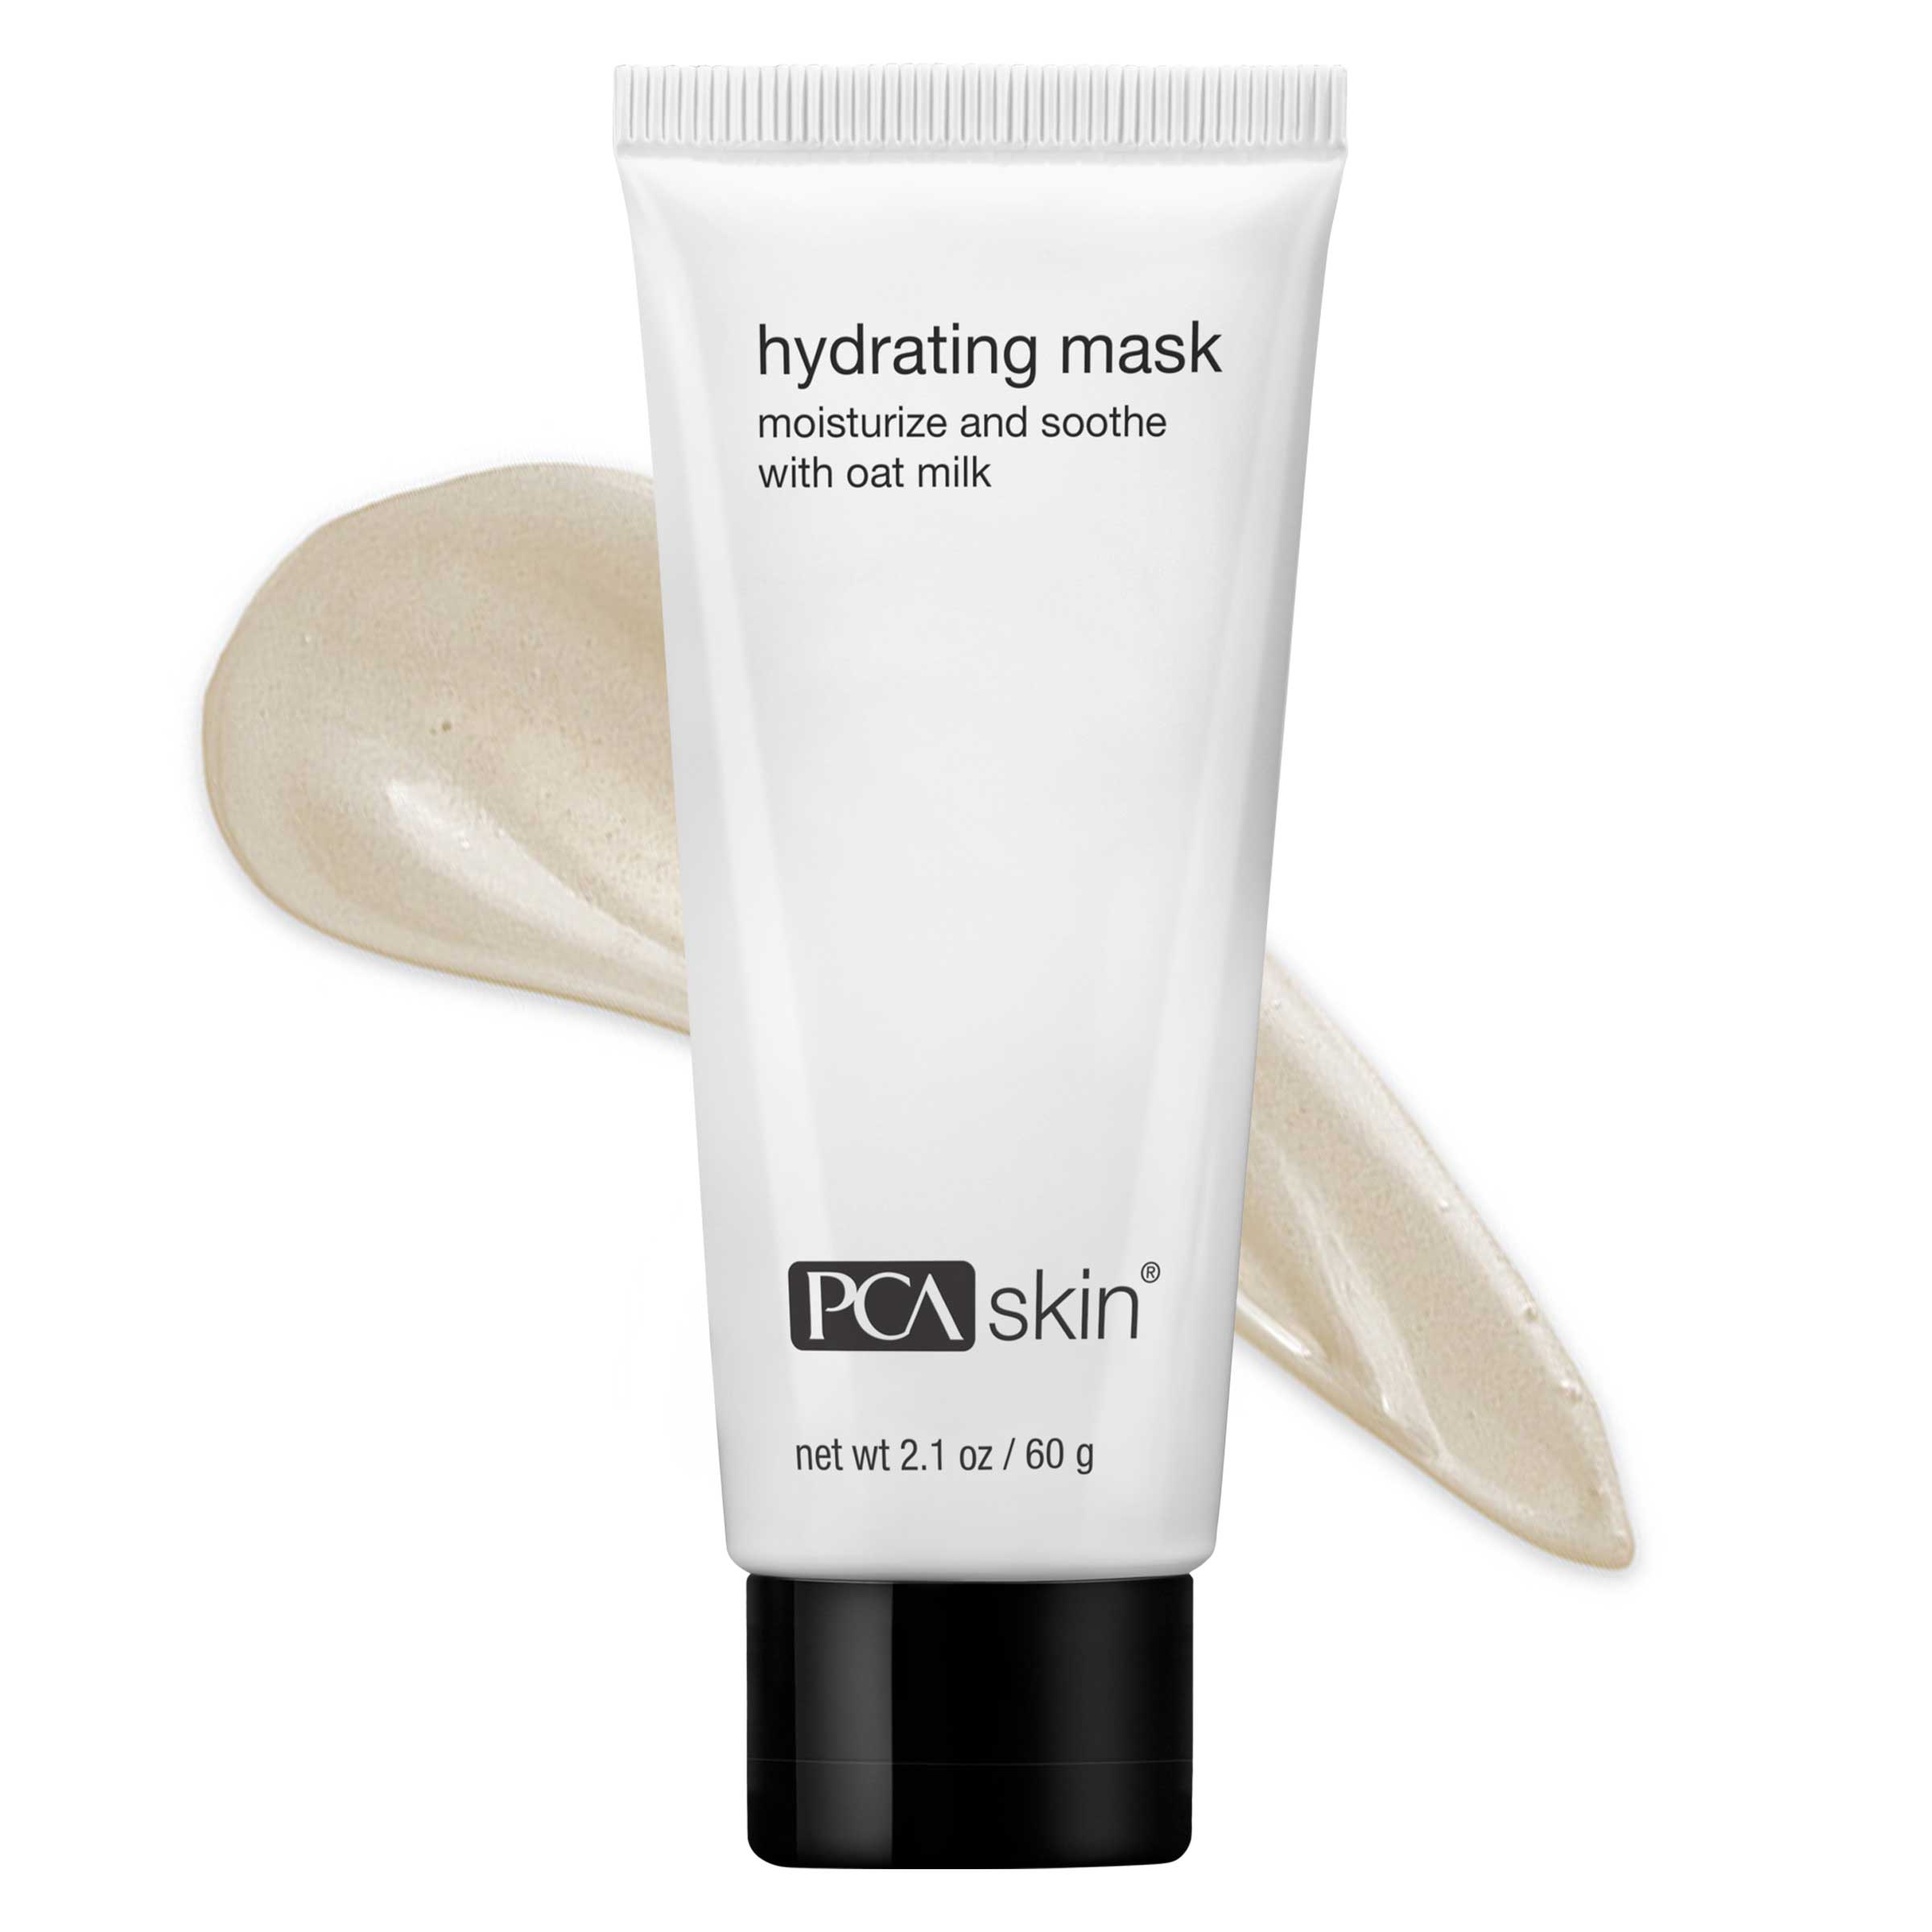 PCA хидратираща маска за кожата (2.1 oz)